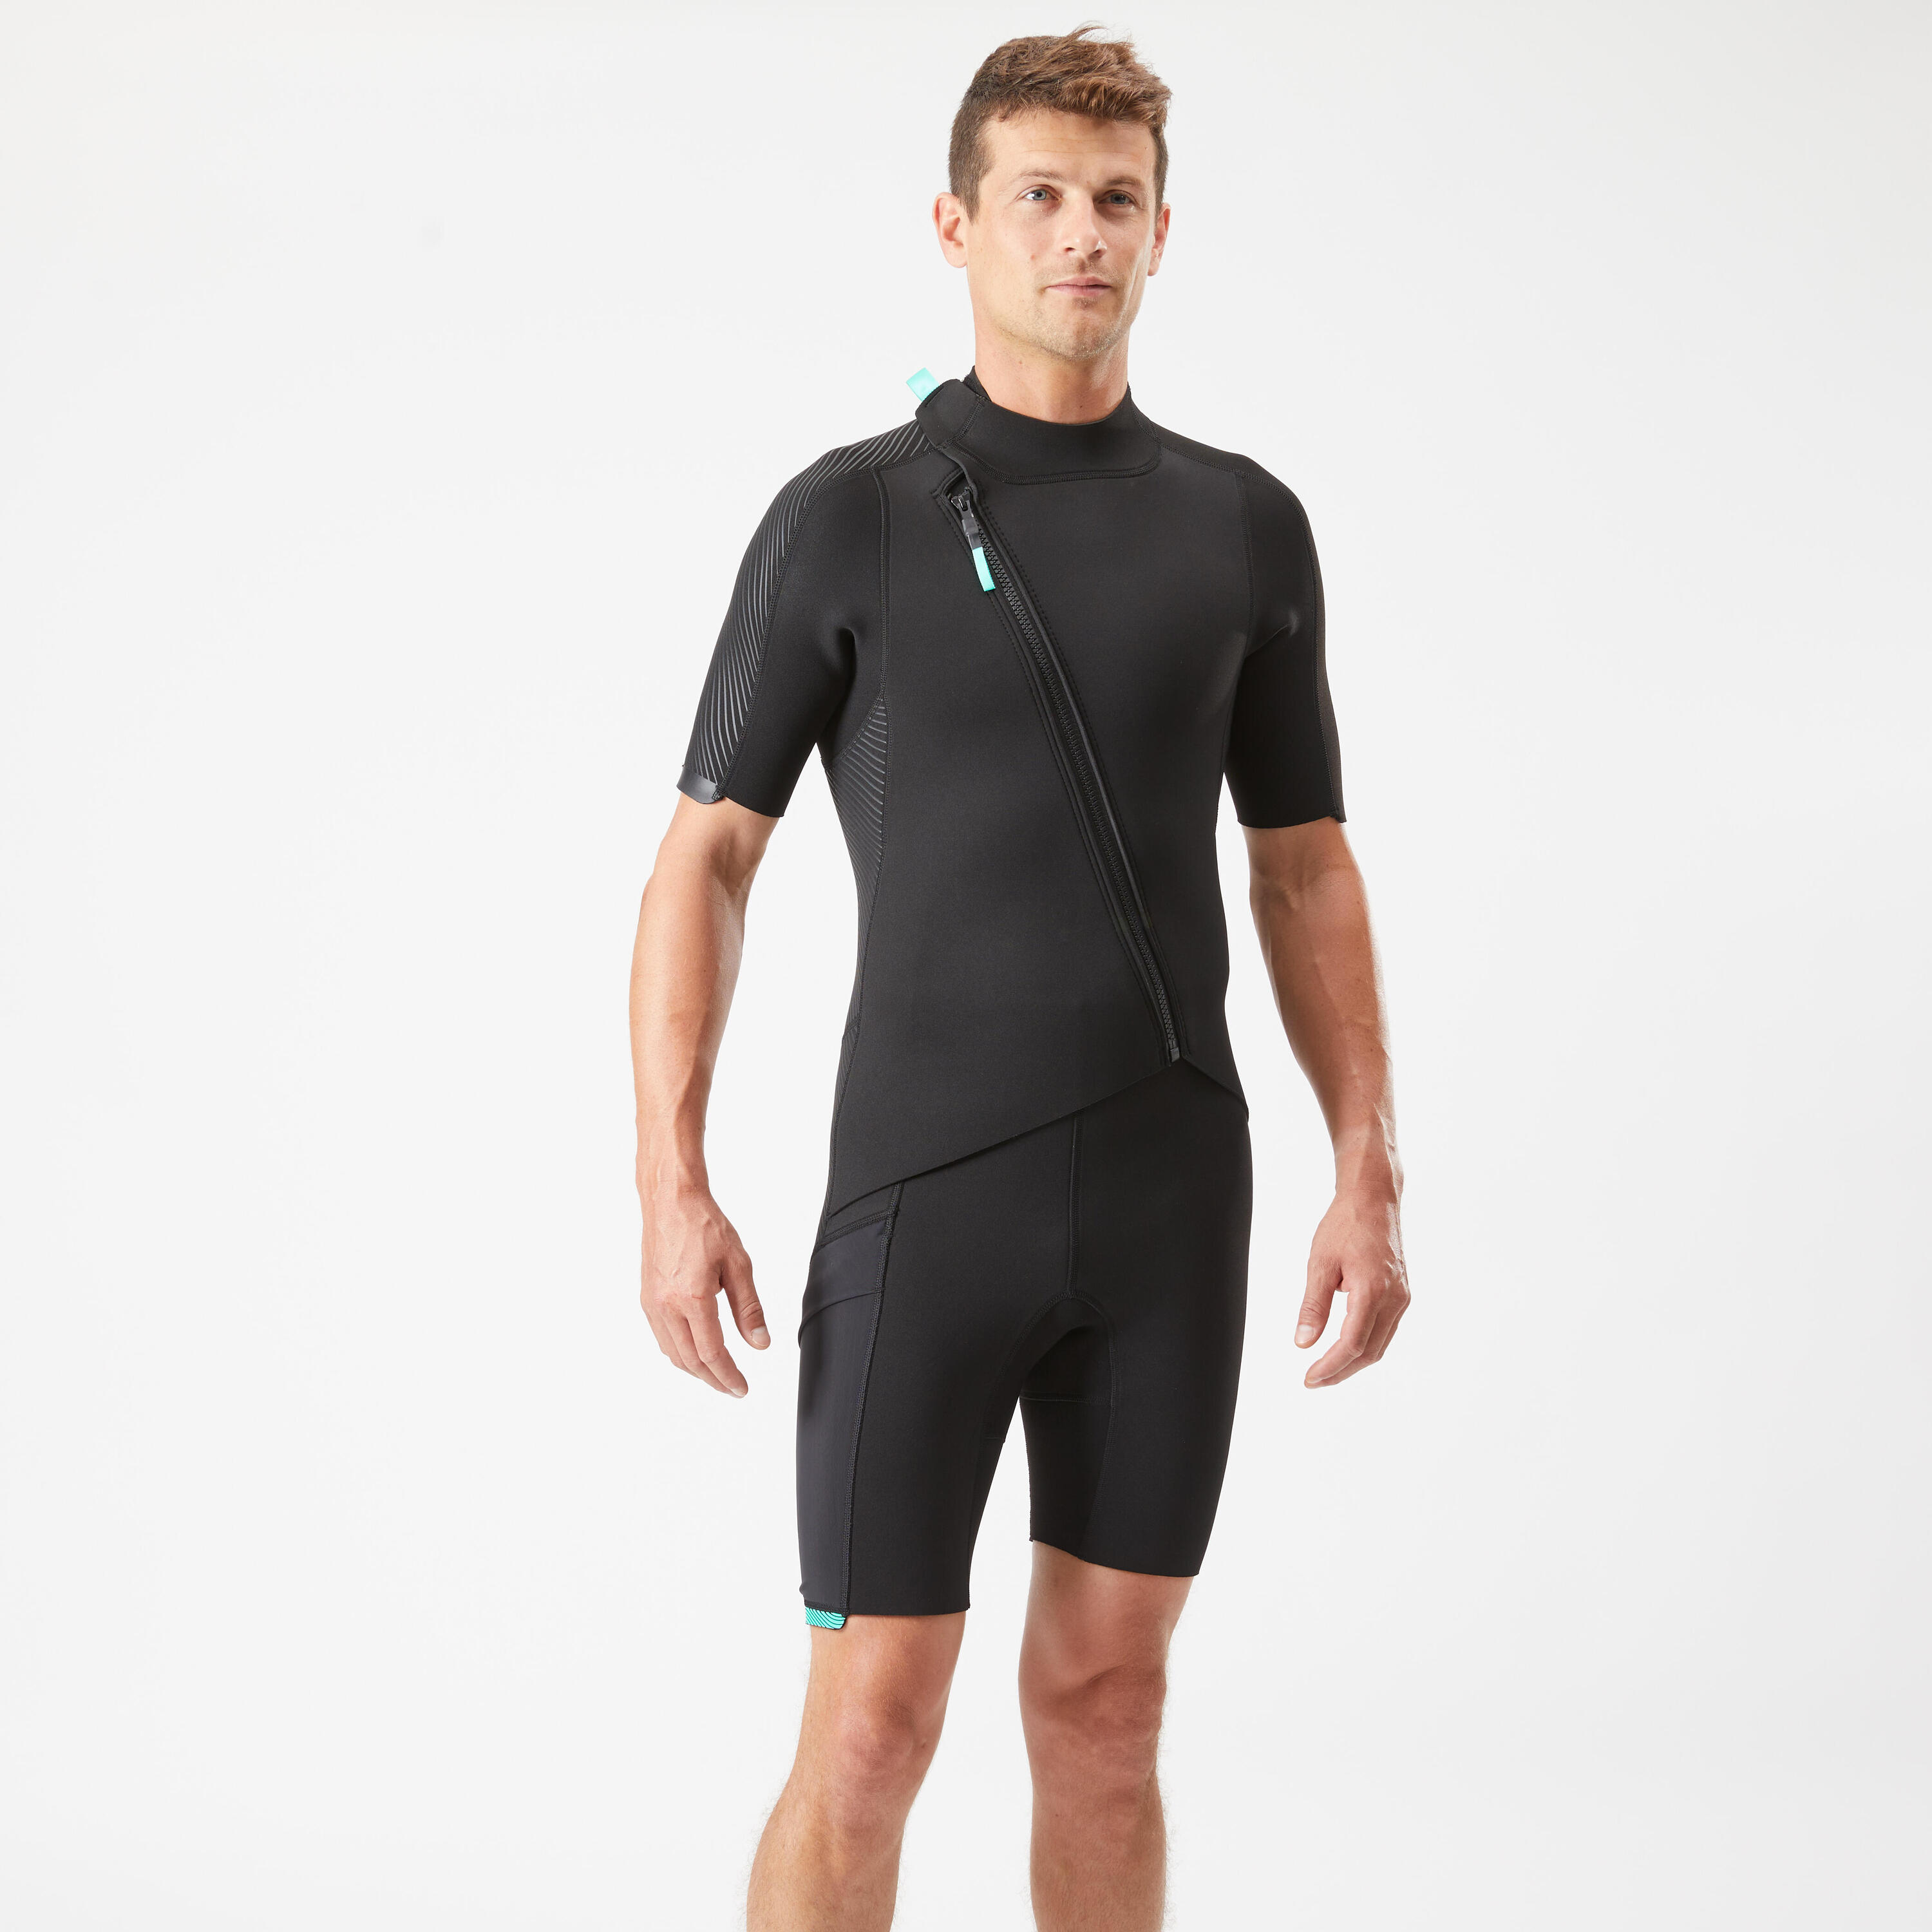 Men's 2 mm neoprene shorty wetsuit with diagonal front zip Easy 2/14